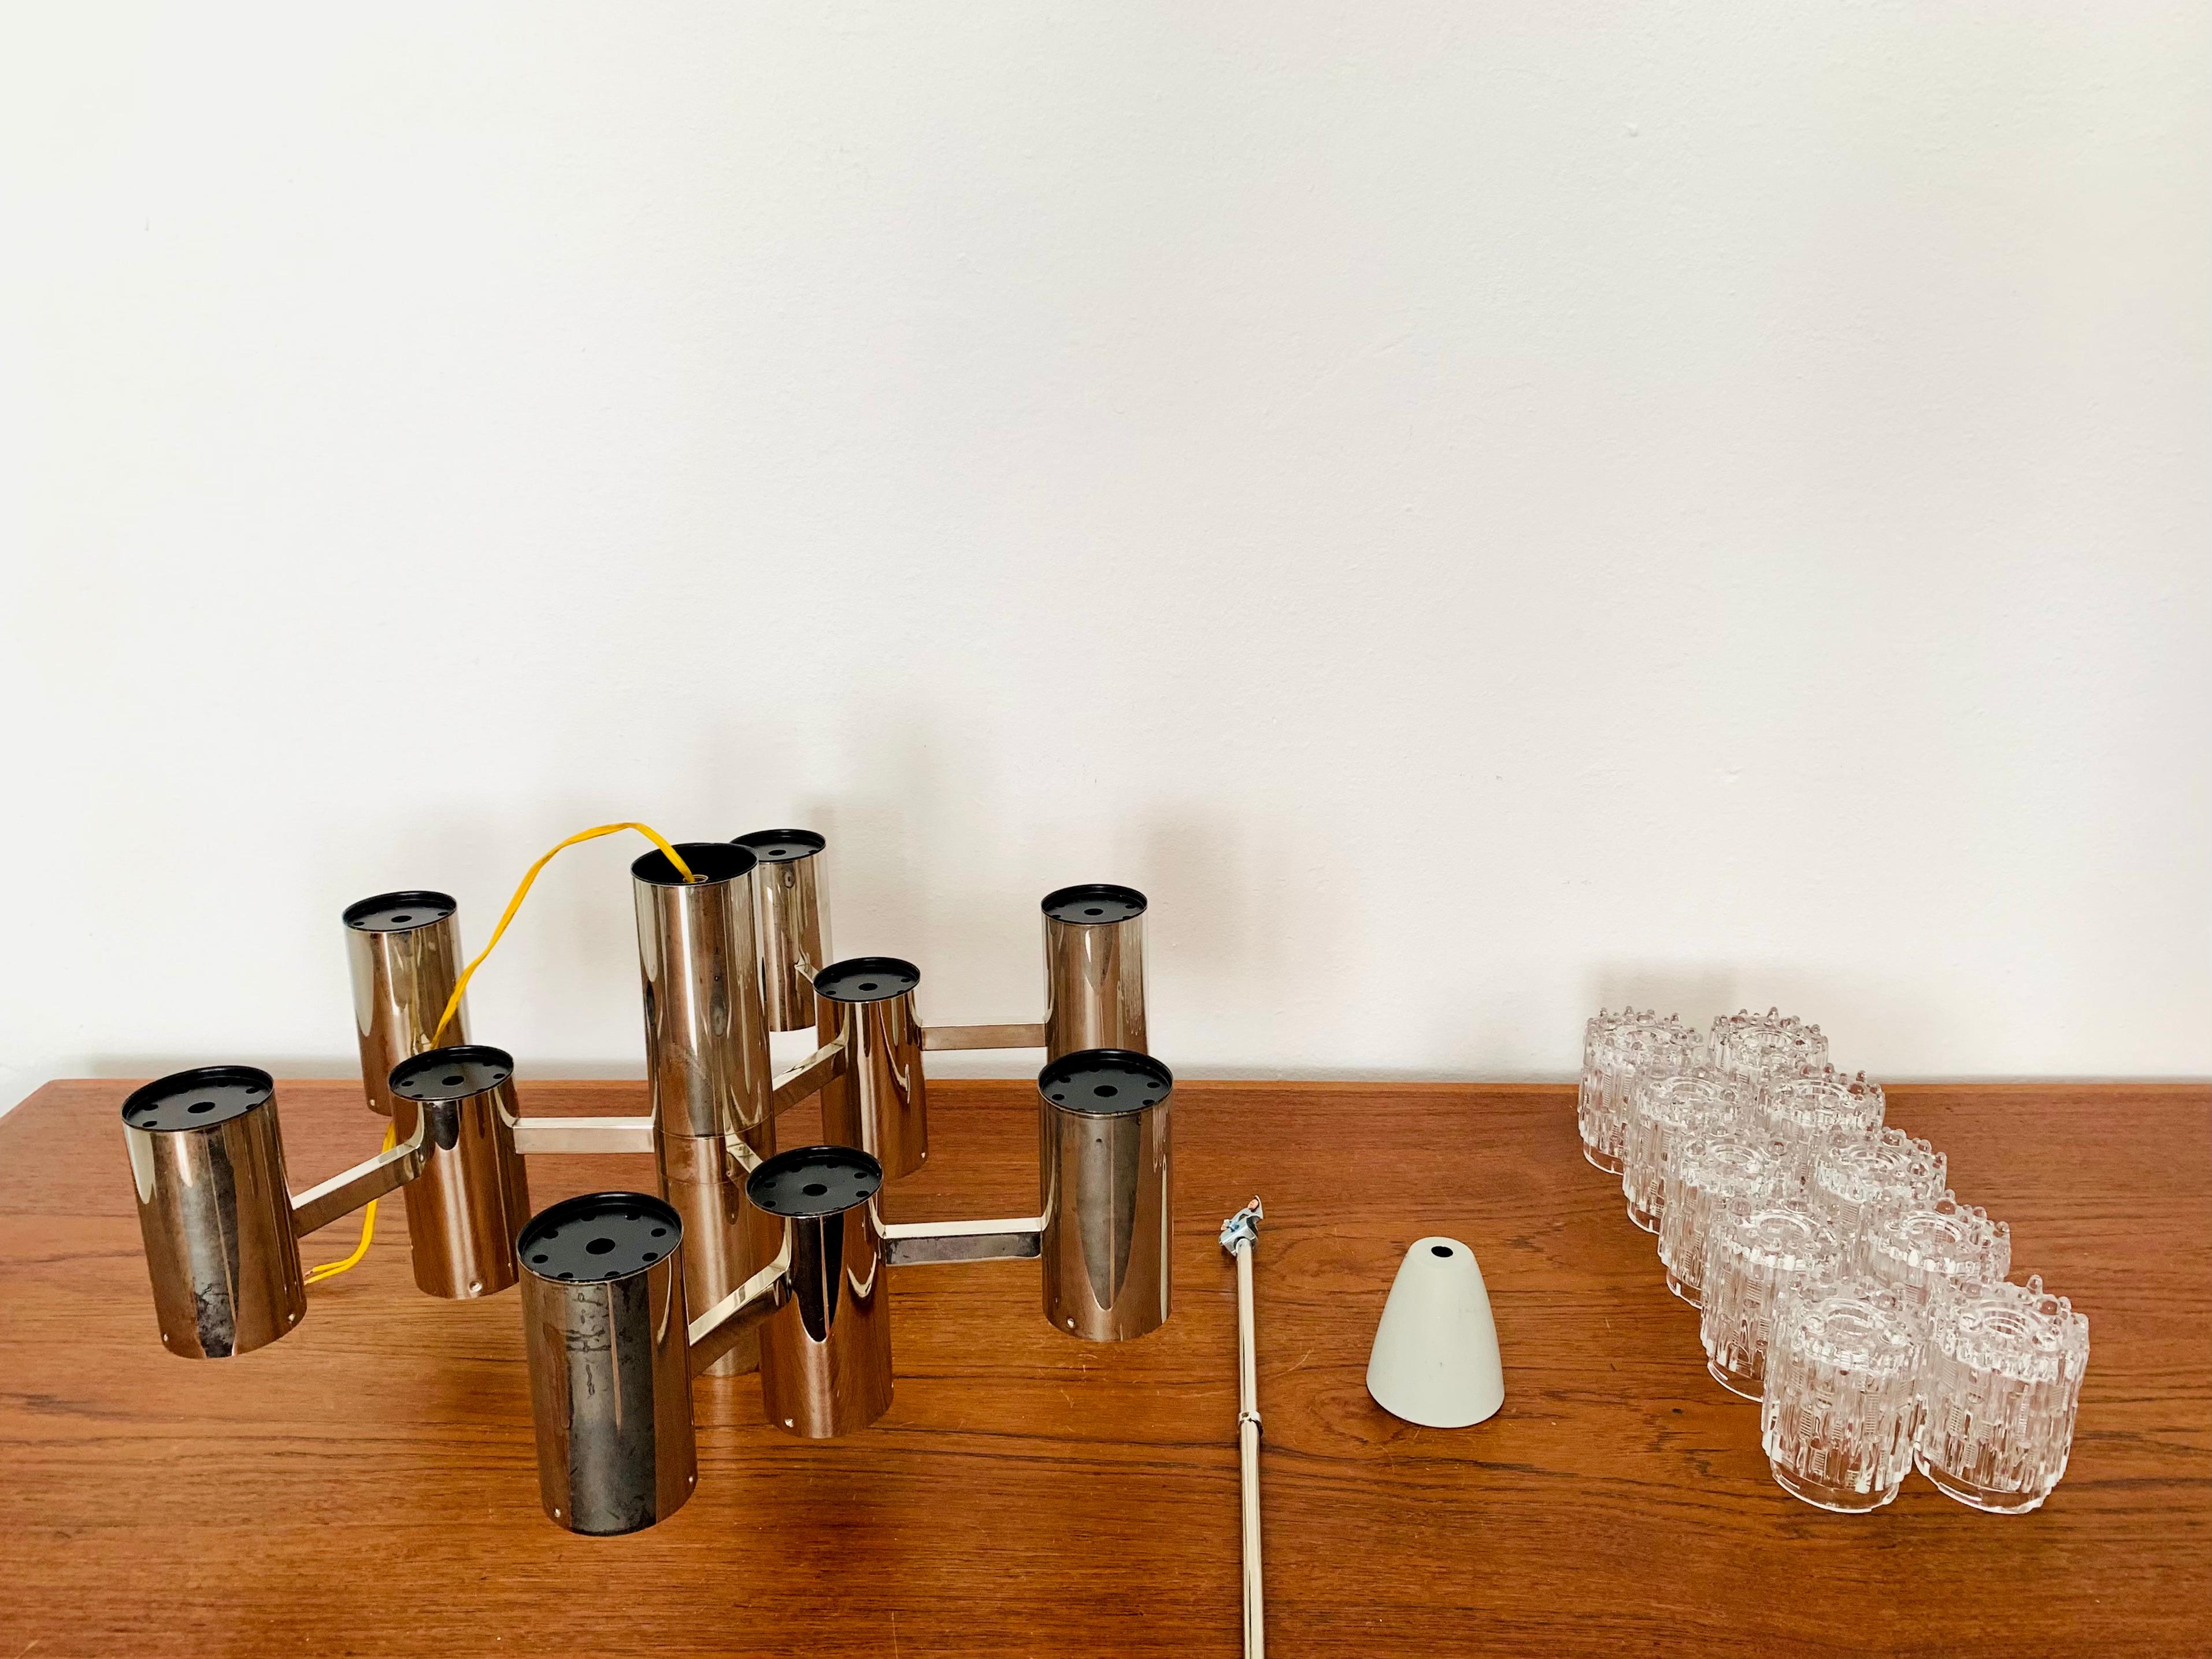 Beeindruckend schöner Eisglas-Kronleuchter aus den 1960er Jahren.
Die sehr schön geformten Murano-Glaselemente verbreiten ein beeindruckend funkelndes Lichtspiel.
Hohe Qualität.
Sehr edle und luxuriöse Ausstrahlung und ein echter Blickfang für jedes